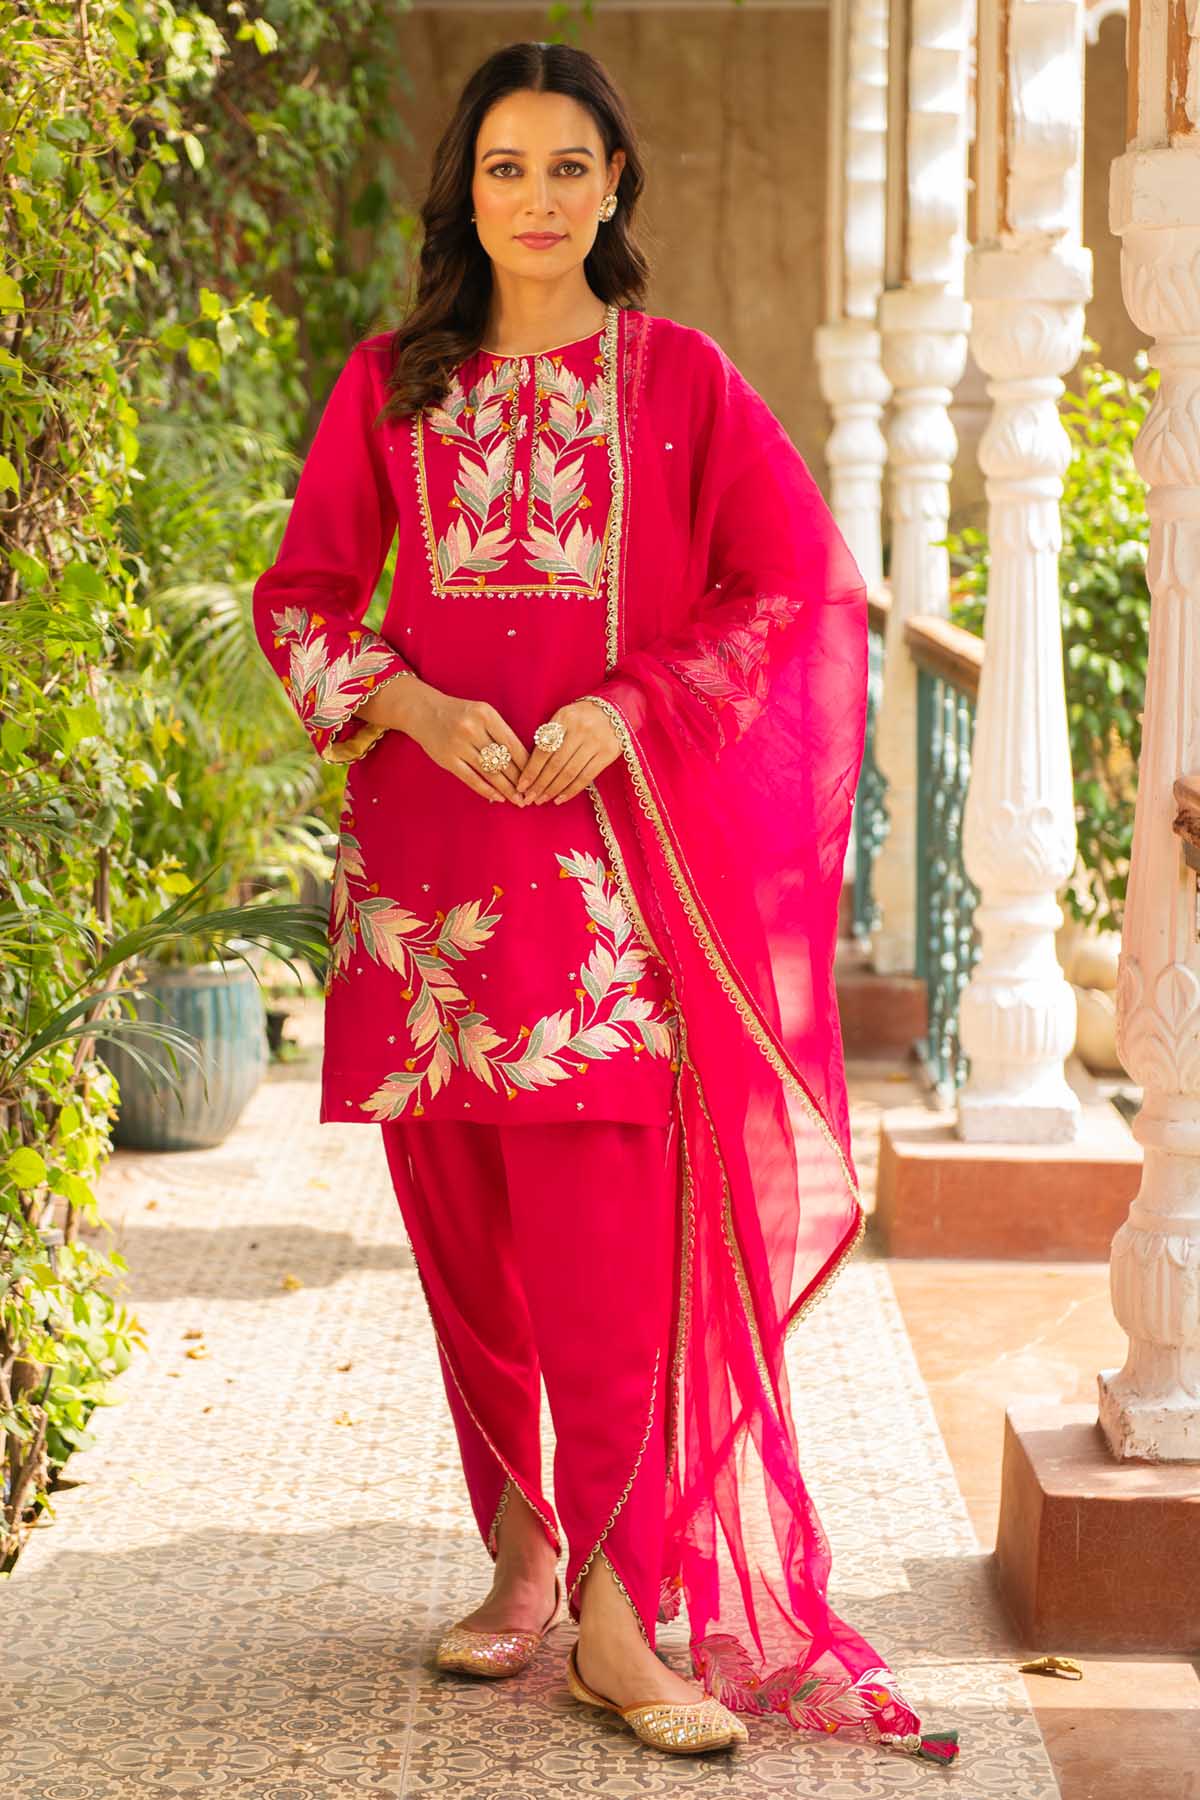 Ajiesh Oberoi Embroidered Rani Pink Kurta Set for women online at ScrollnShops